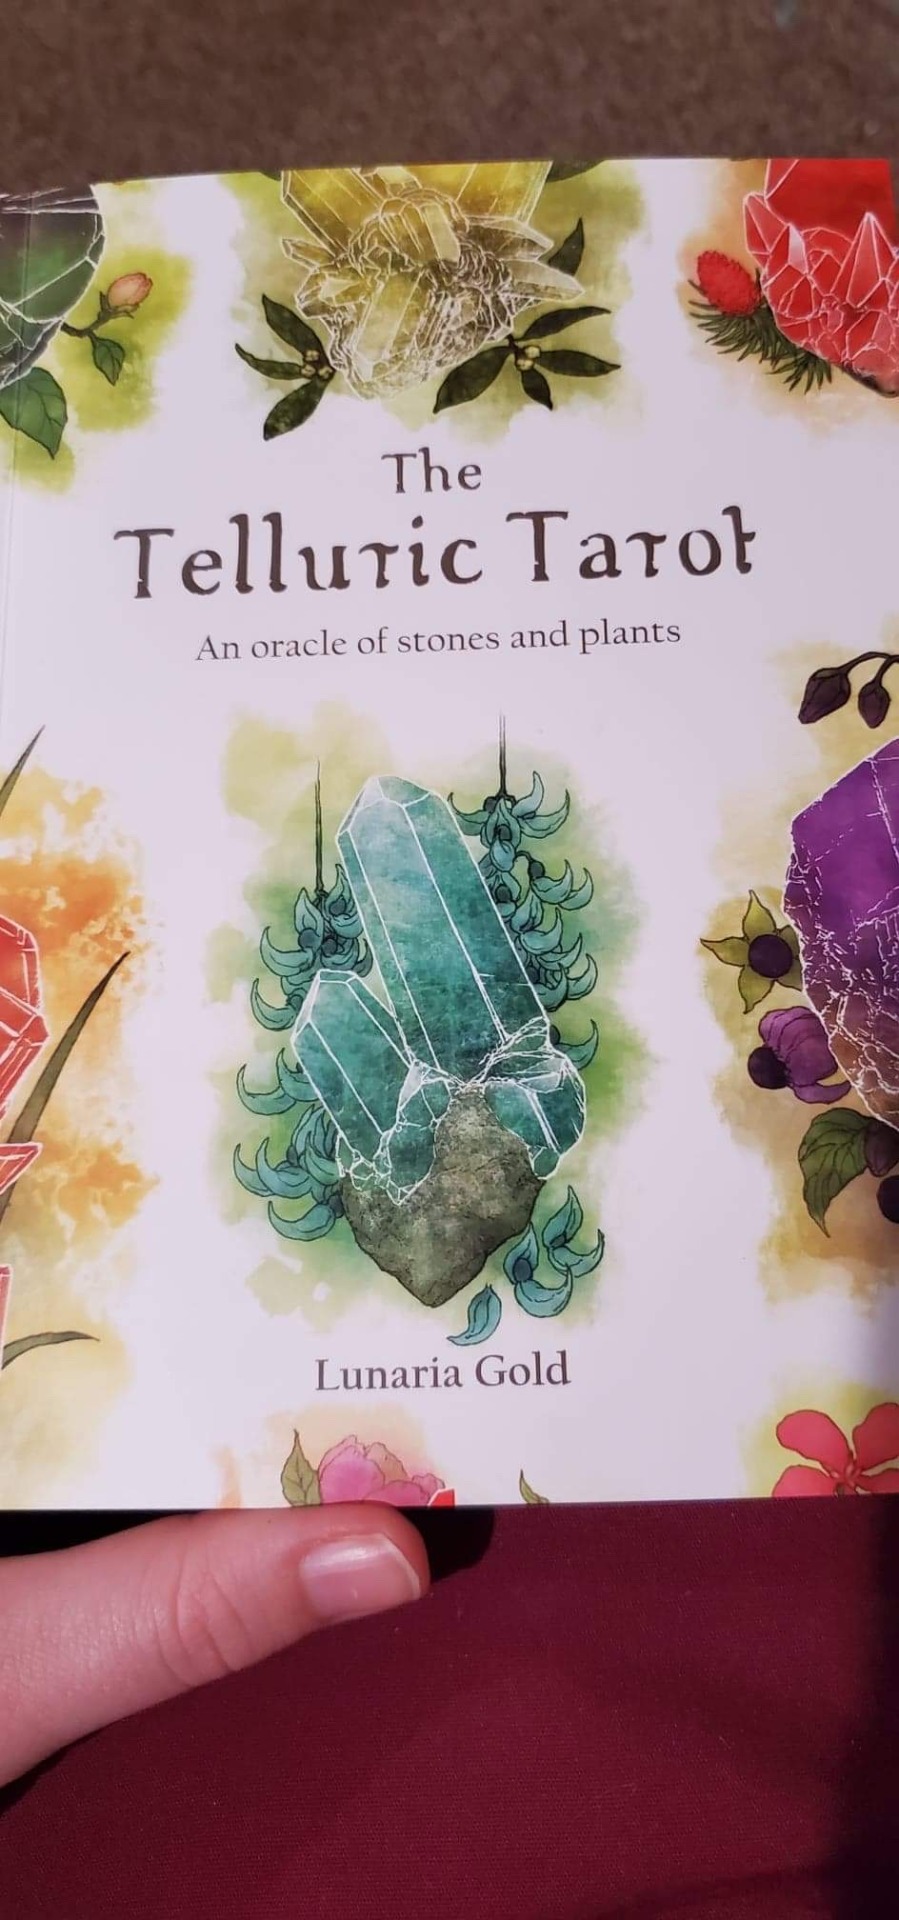 プッシュされた製品 The Tarot Telluric トランプ/UNO